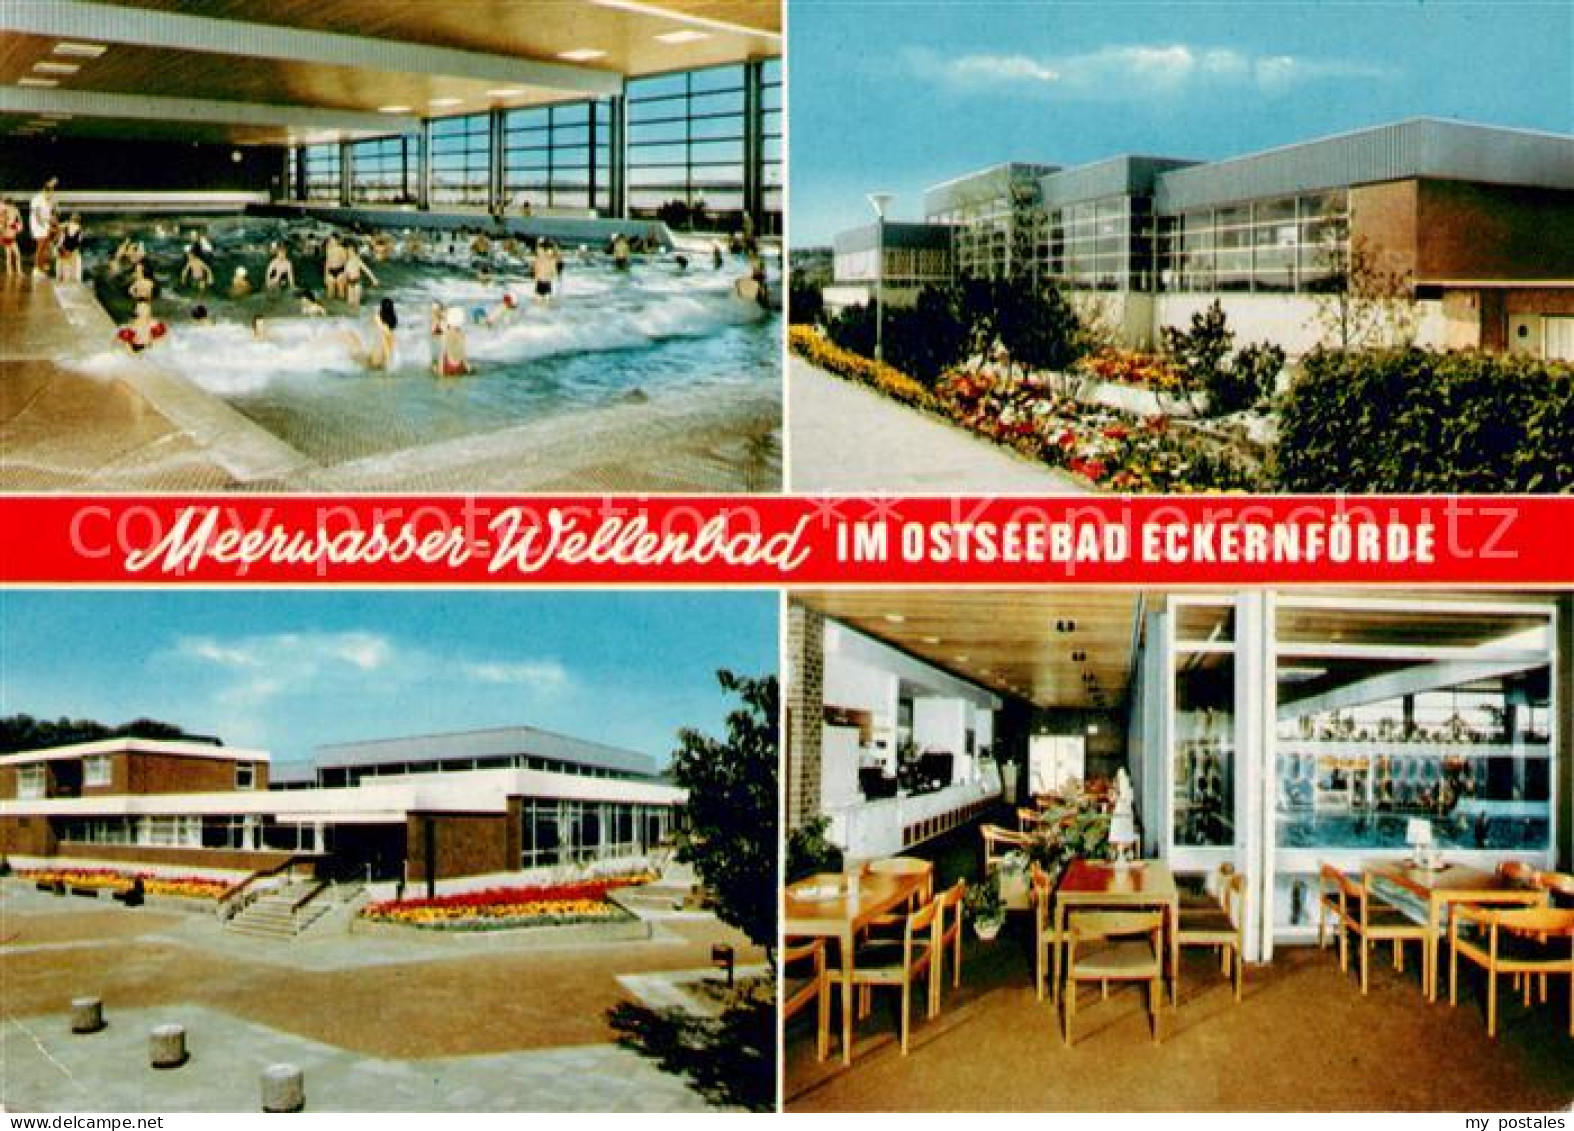 73634100 Eckernfoerde Meerwasser Wellenbad Details Restaurant Eckernfoerde - Eckernförde